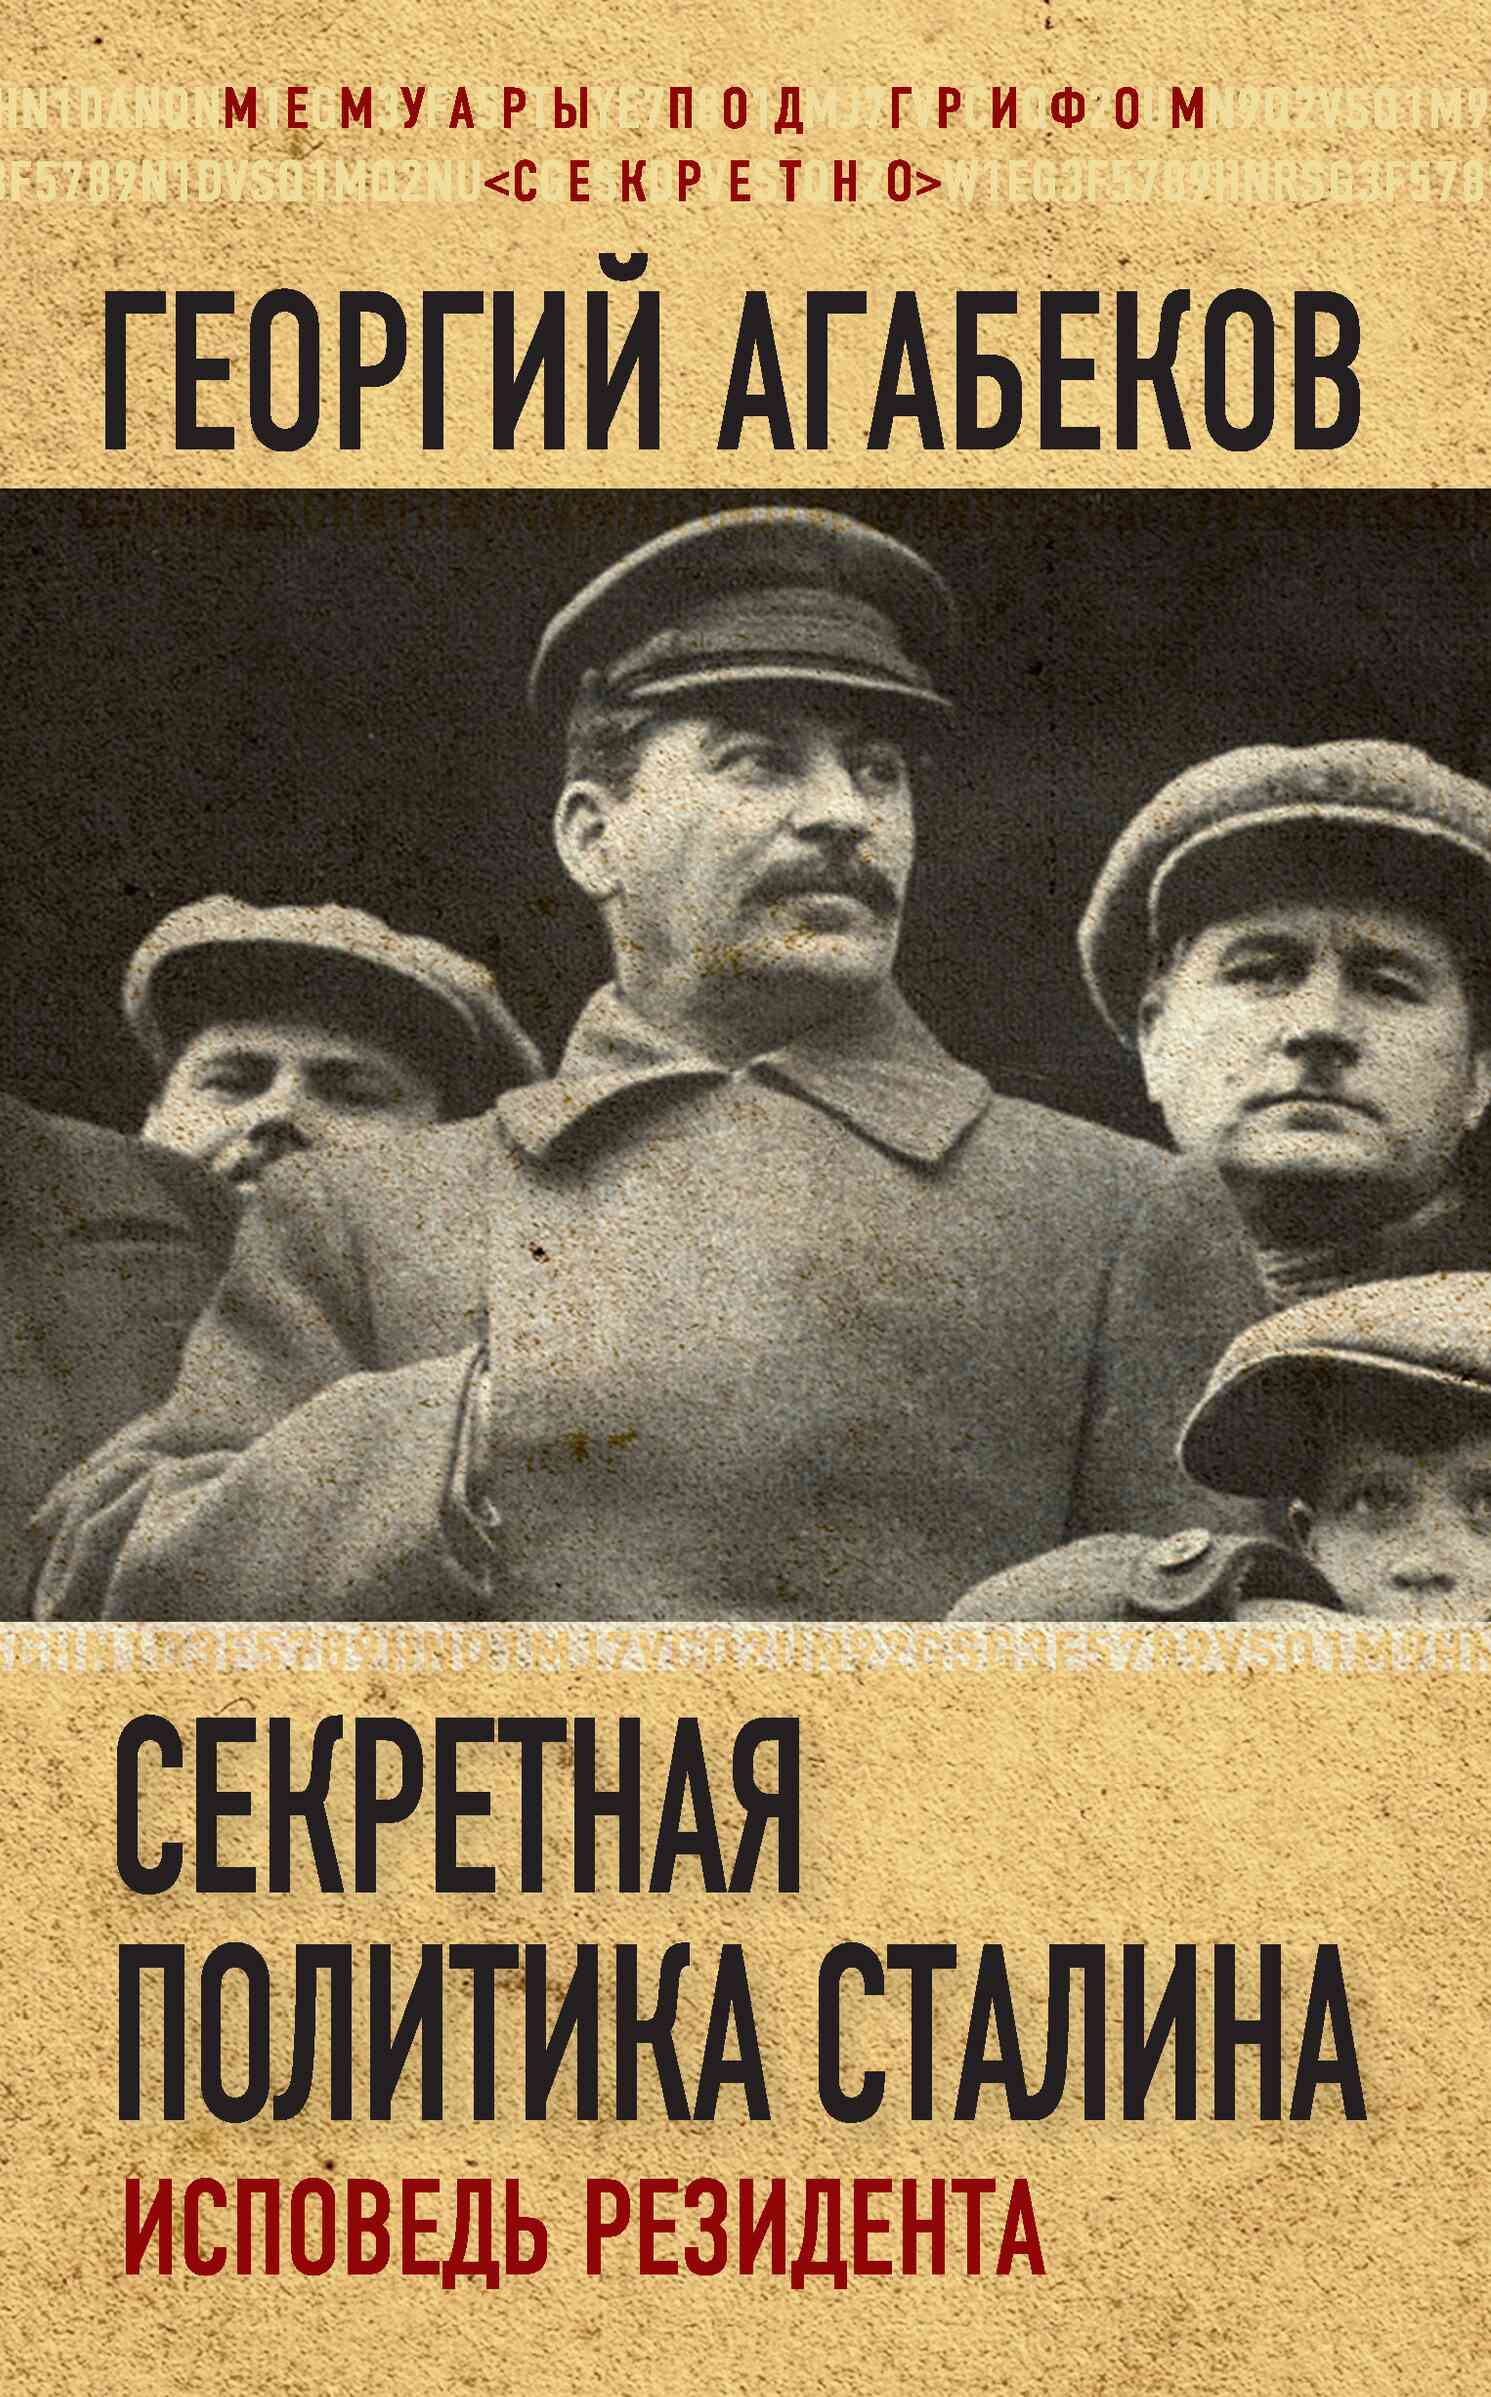 Агабеков Георгий - Секретная политика Сталина. Исповедь резидента скачать бесплатно